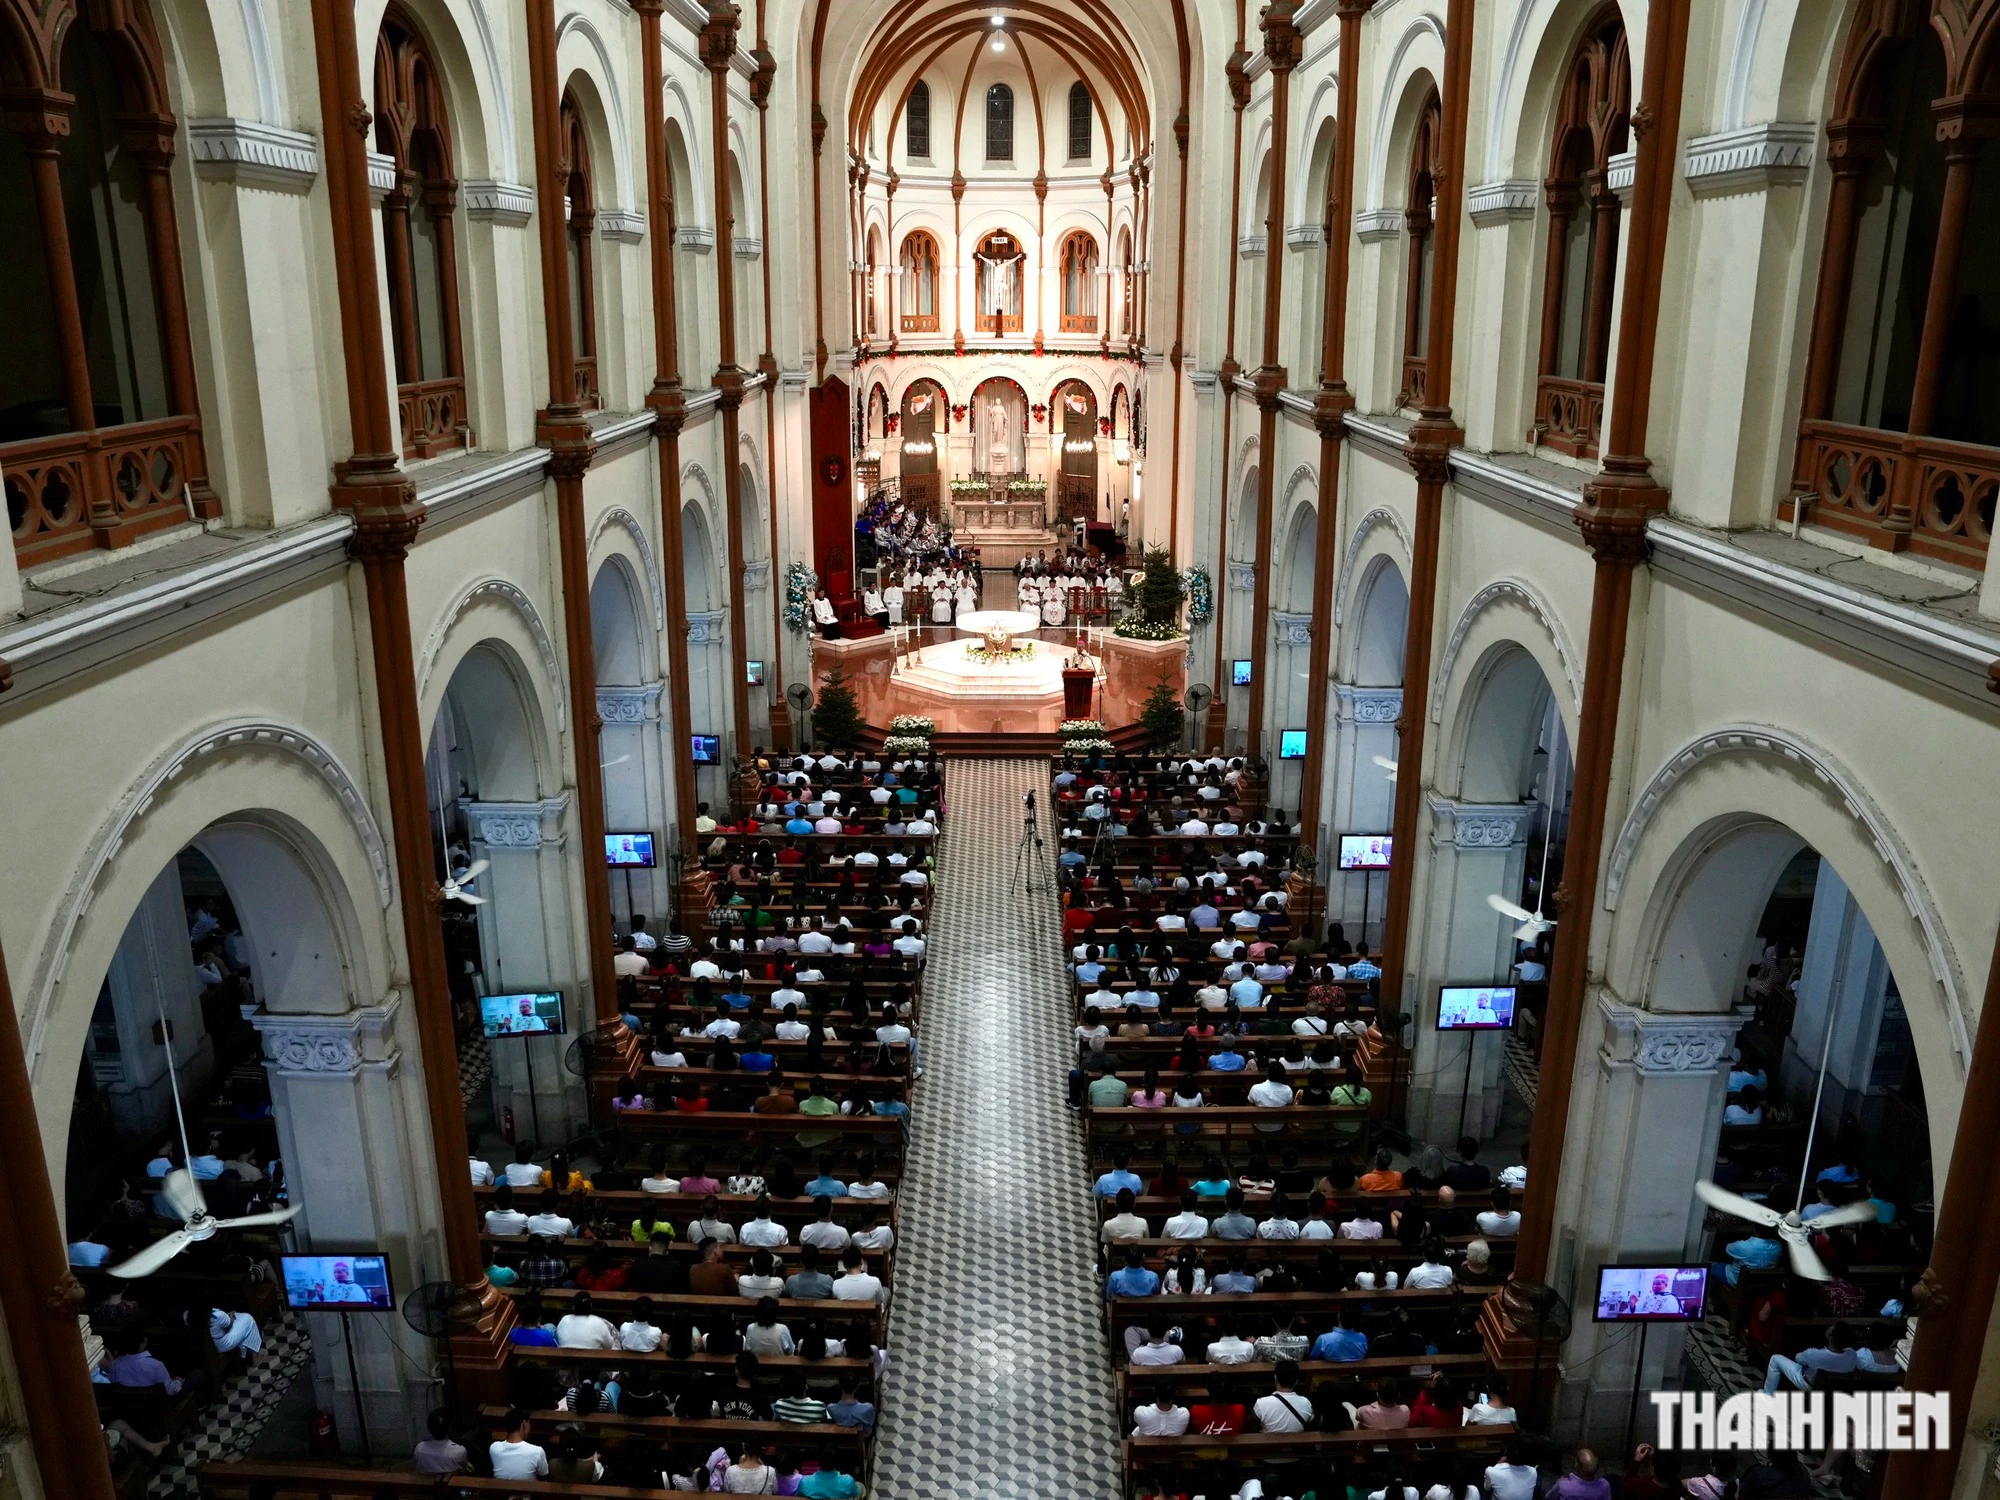 Hơn 1.000 người vào Nhà thờ Đức Bà Sài Gòn làm thánh lễ mừng Chúa Giáng sinh- Ảnh 1.